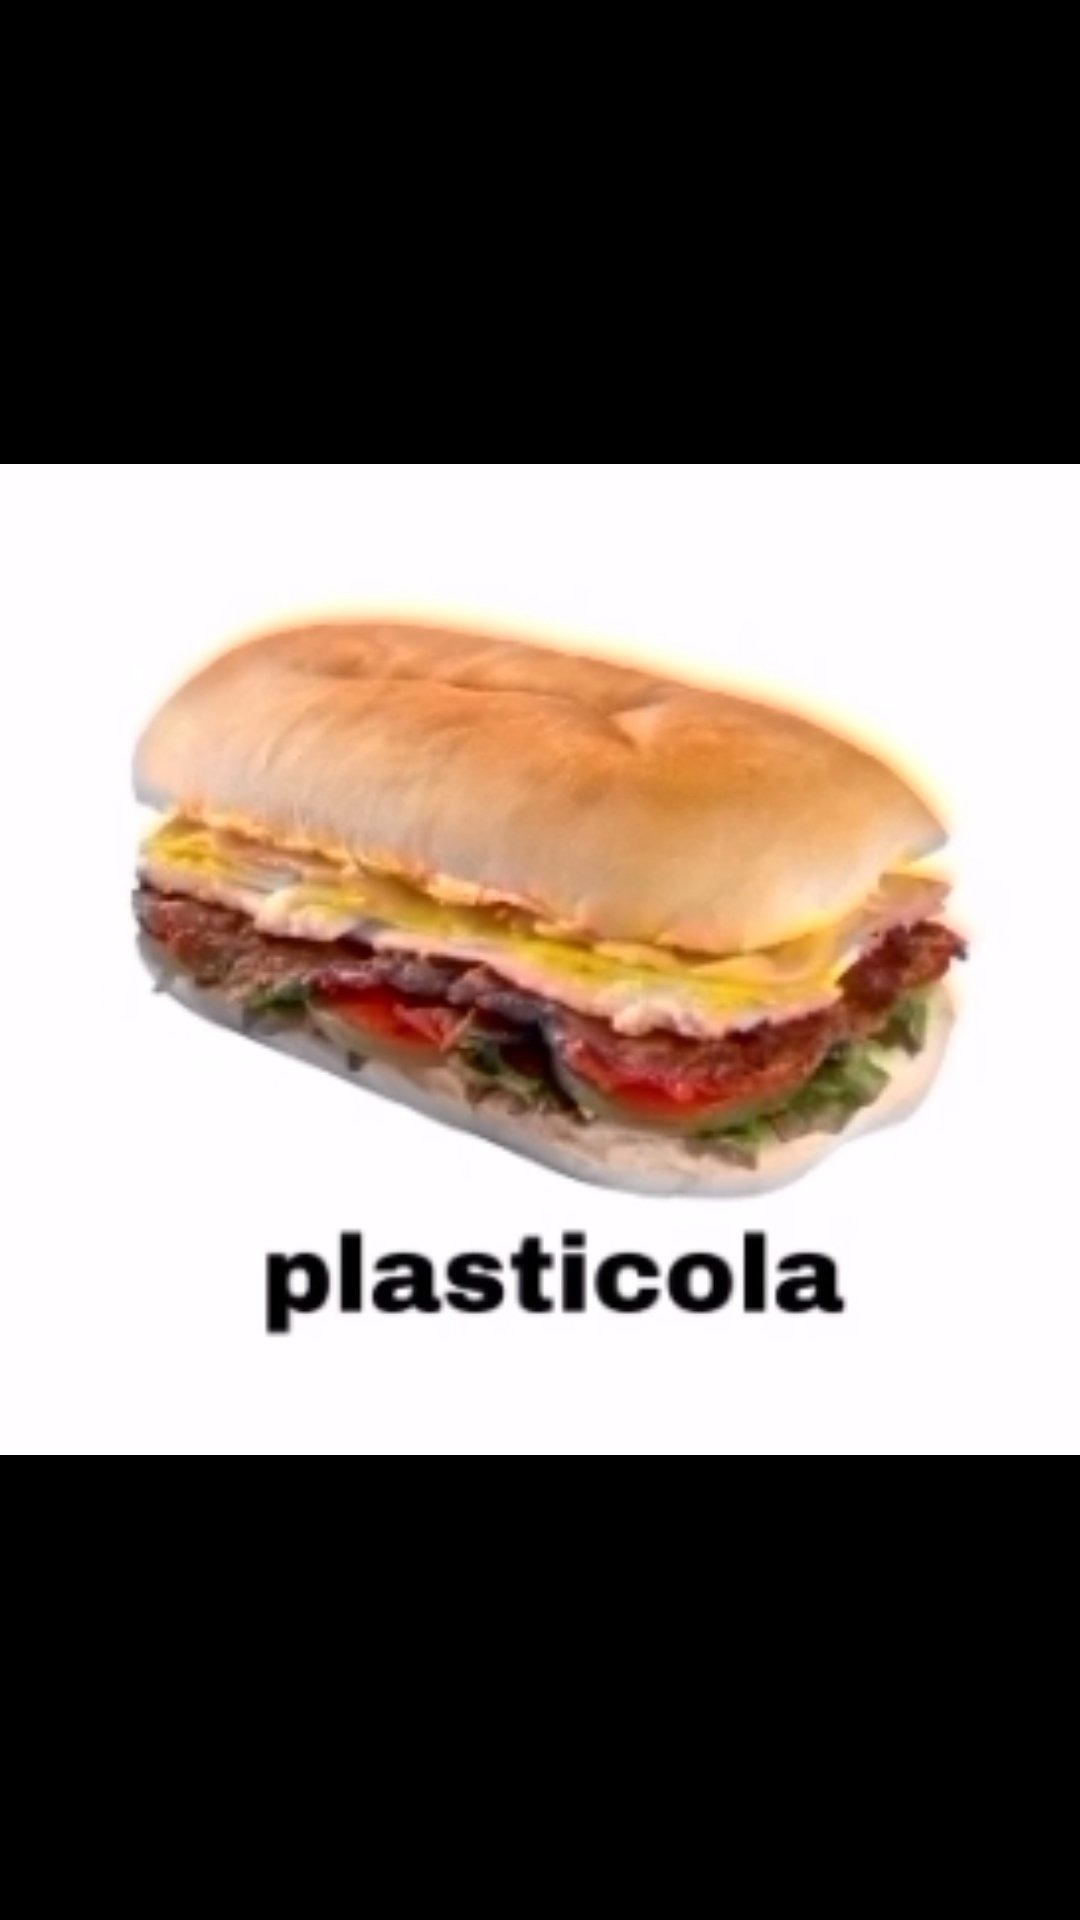 Plasticola - meme